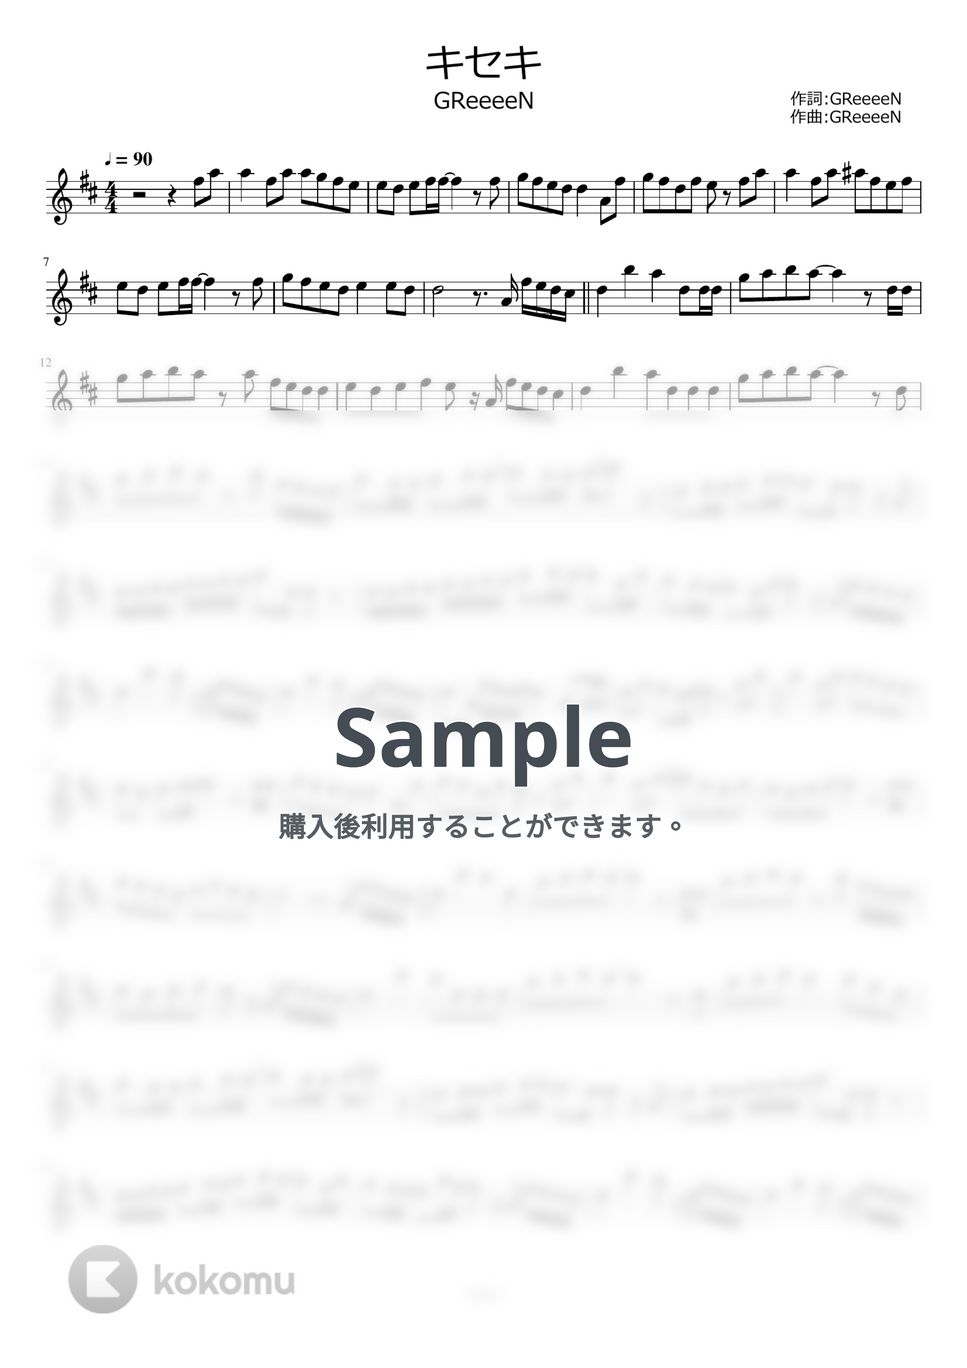 GReeeeN - キセキ by ayako music school